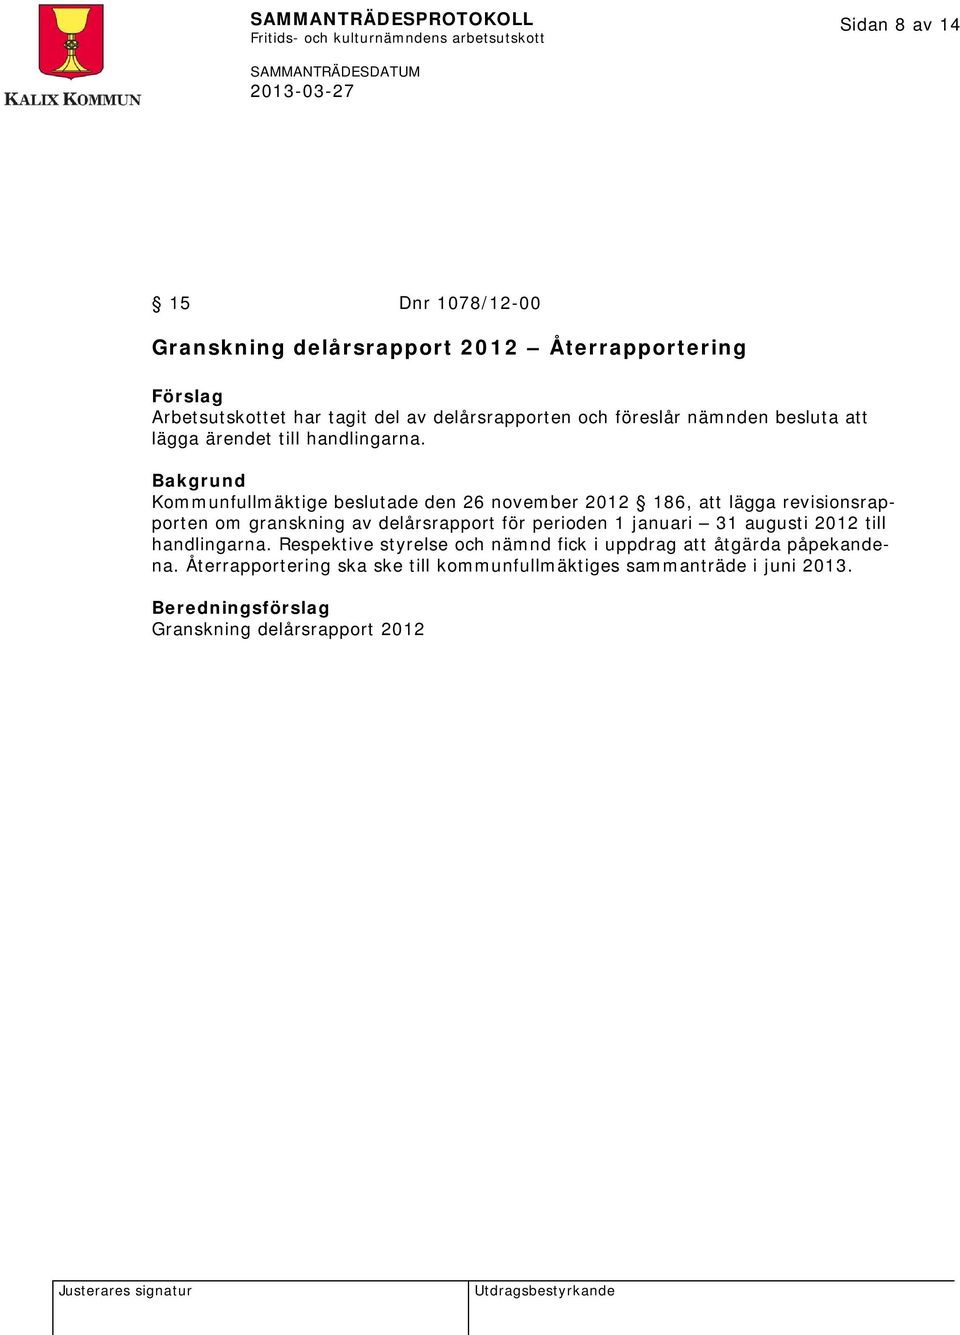 Kommunfullmäktige beslutade den 26 november 2012 186, att lägga revisionsrapporten om granskning av delårsrapport för perioden 1